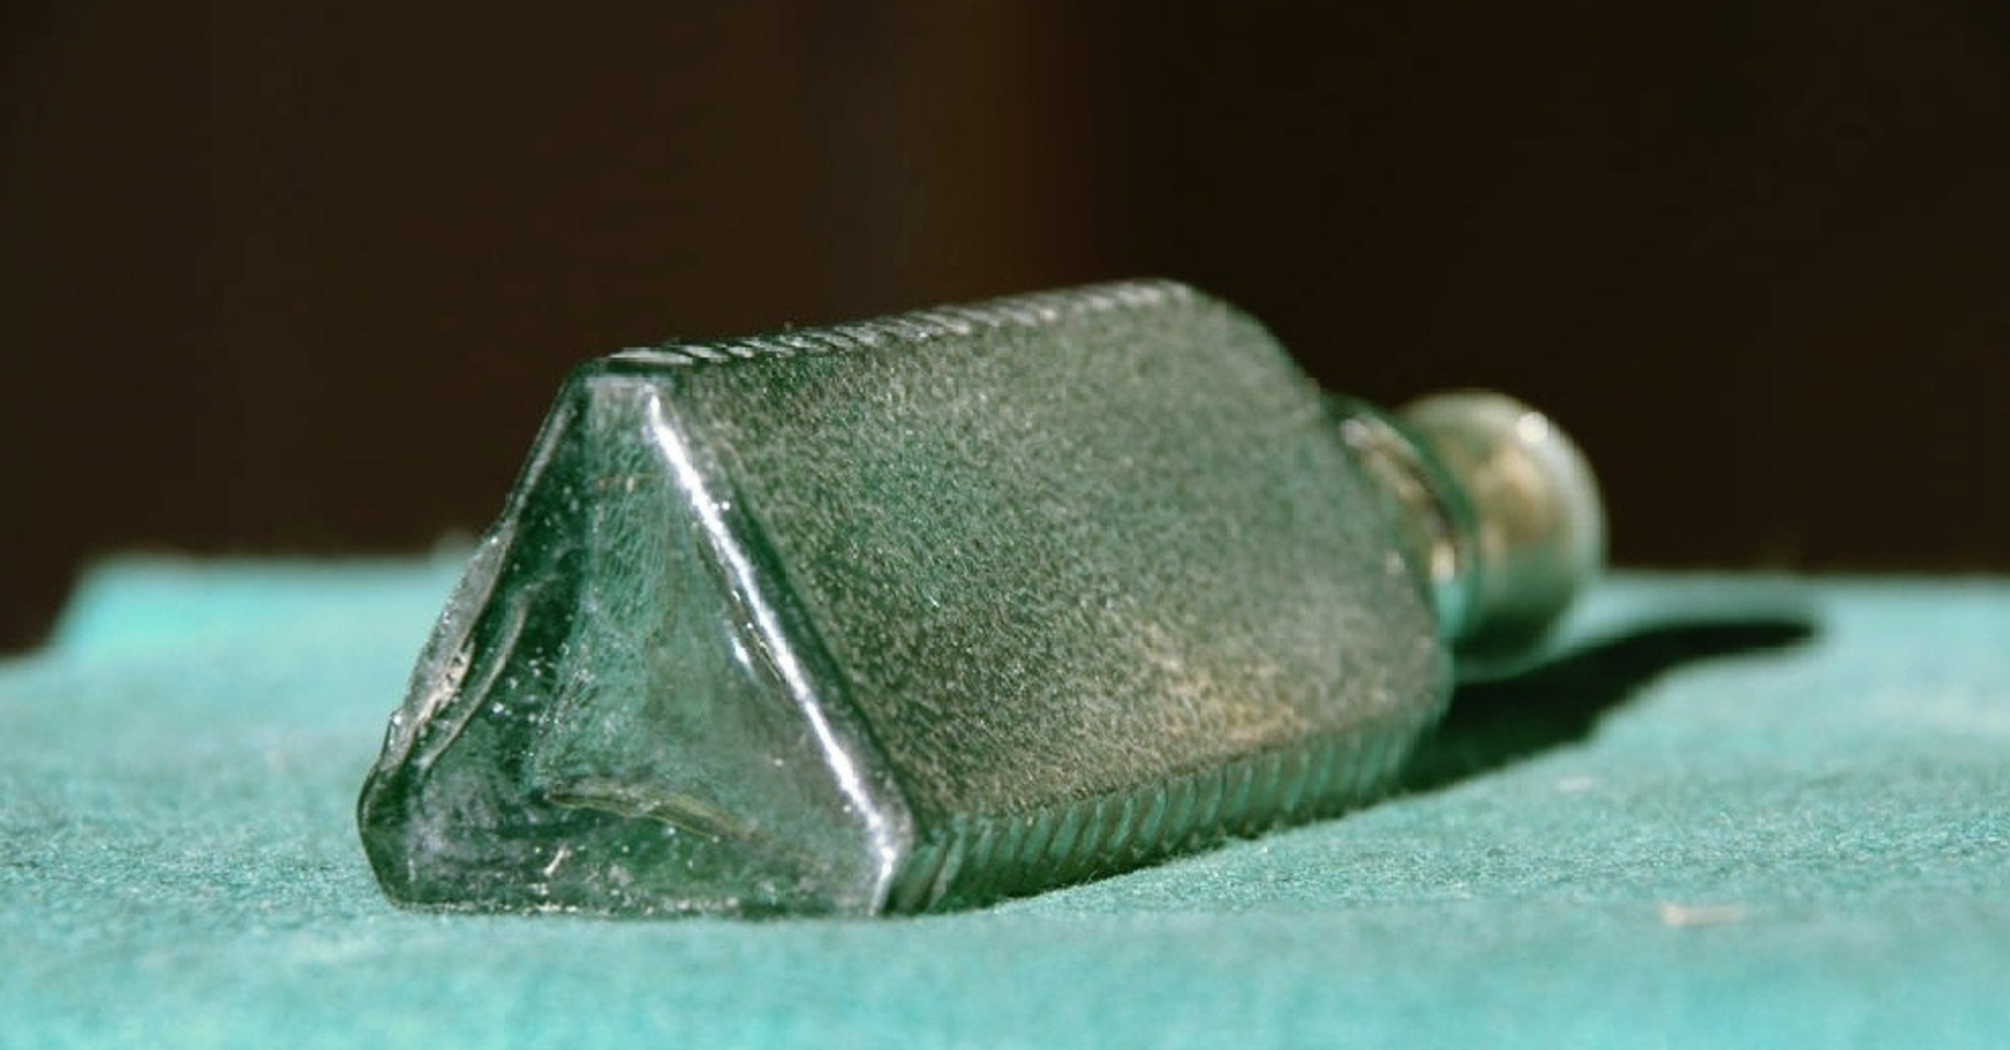 Dlaczego trójkątne szklane butelki były produkowane w ZSRR: były przeznaczone tylko dla jednego produktu